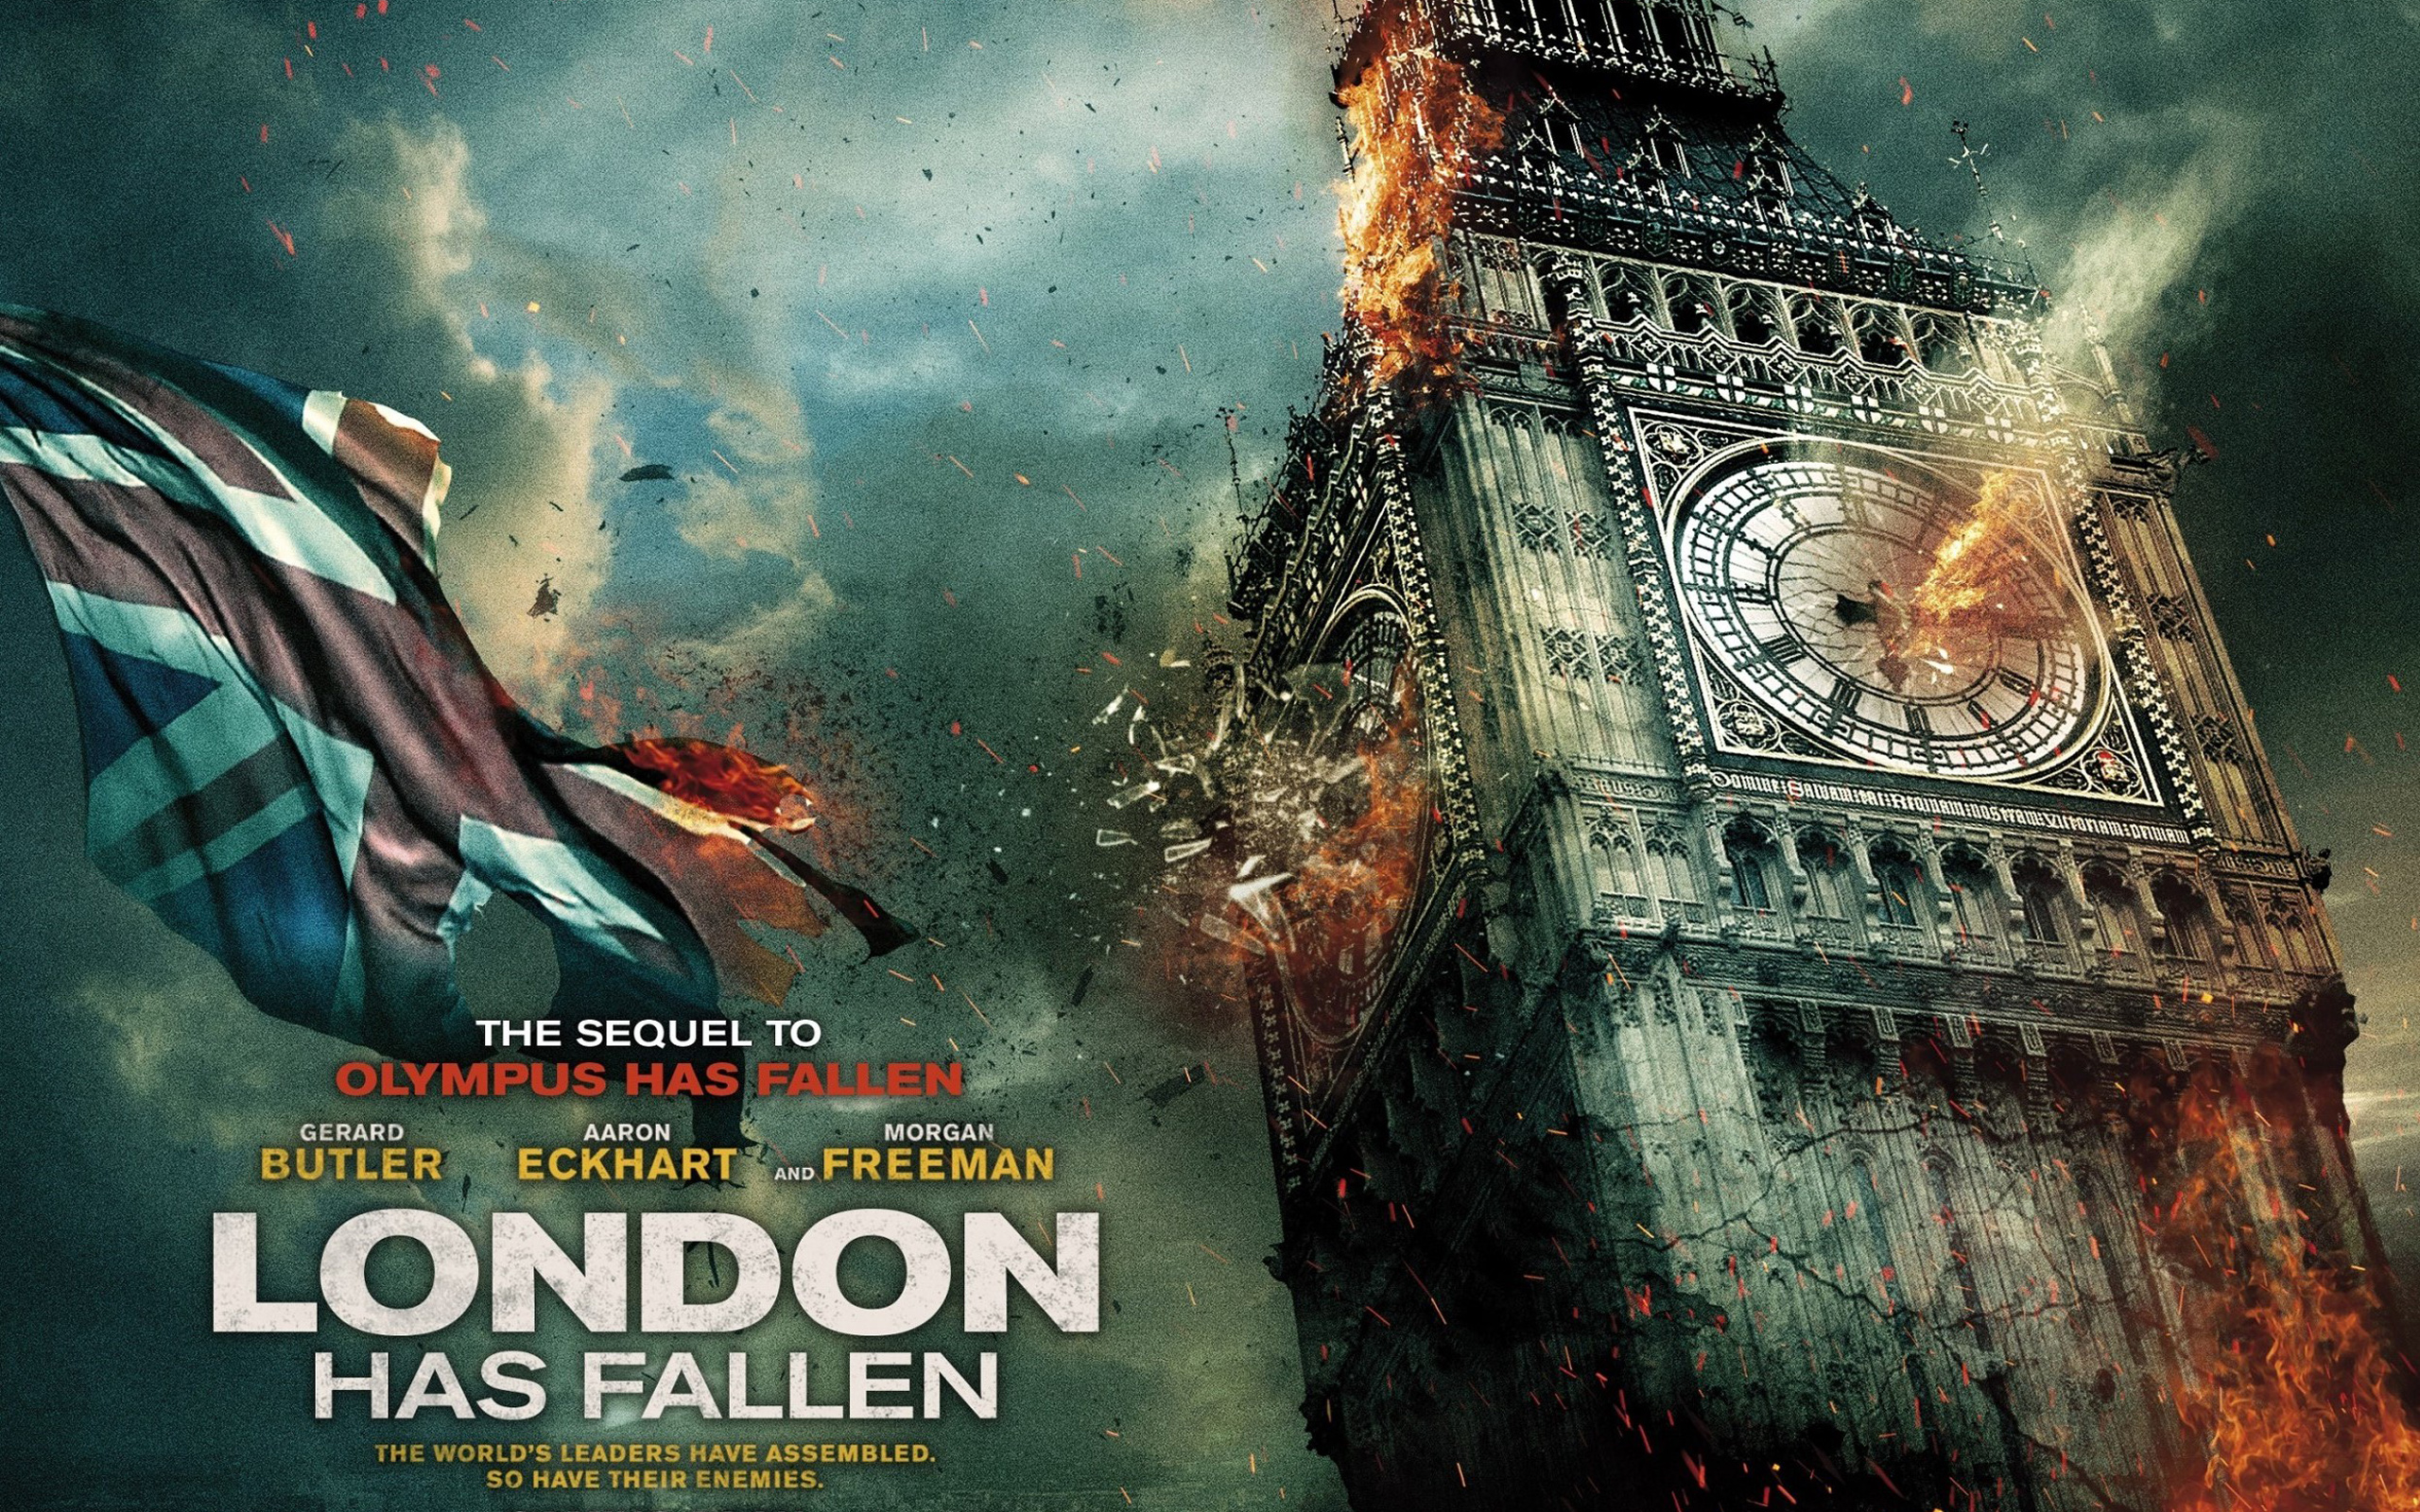 London Has Fallen Movie Desktop Wallpaper - Angel Has Fallen 1 - HD Wallpaper 